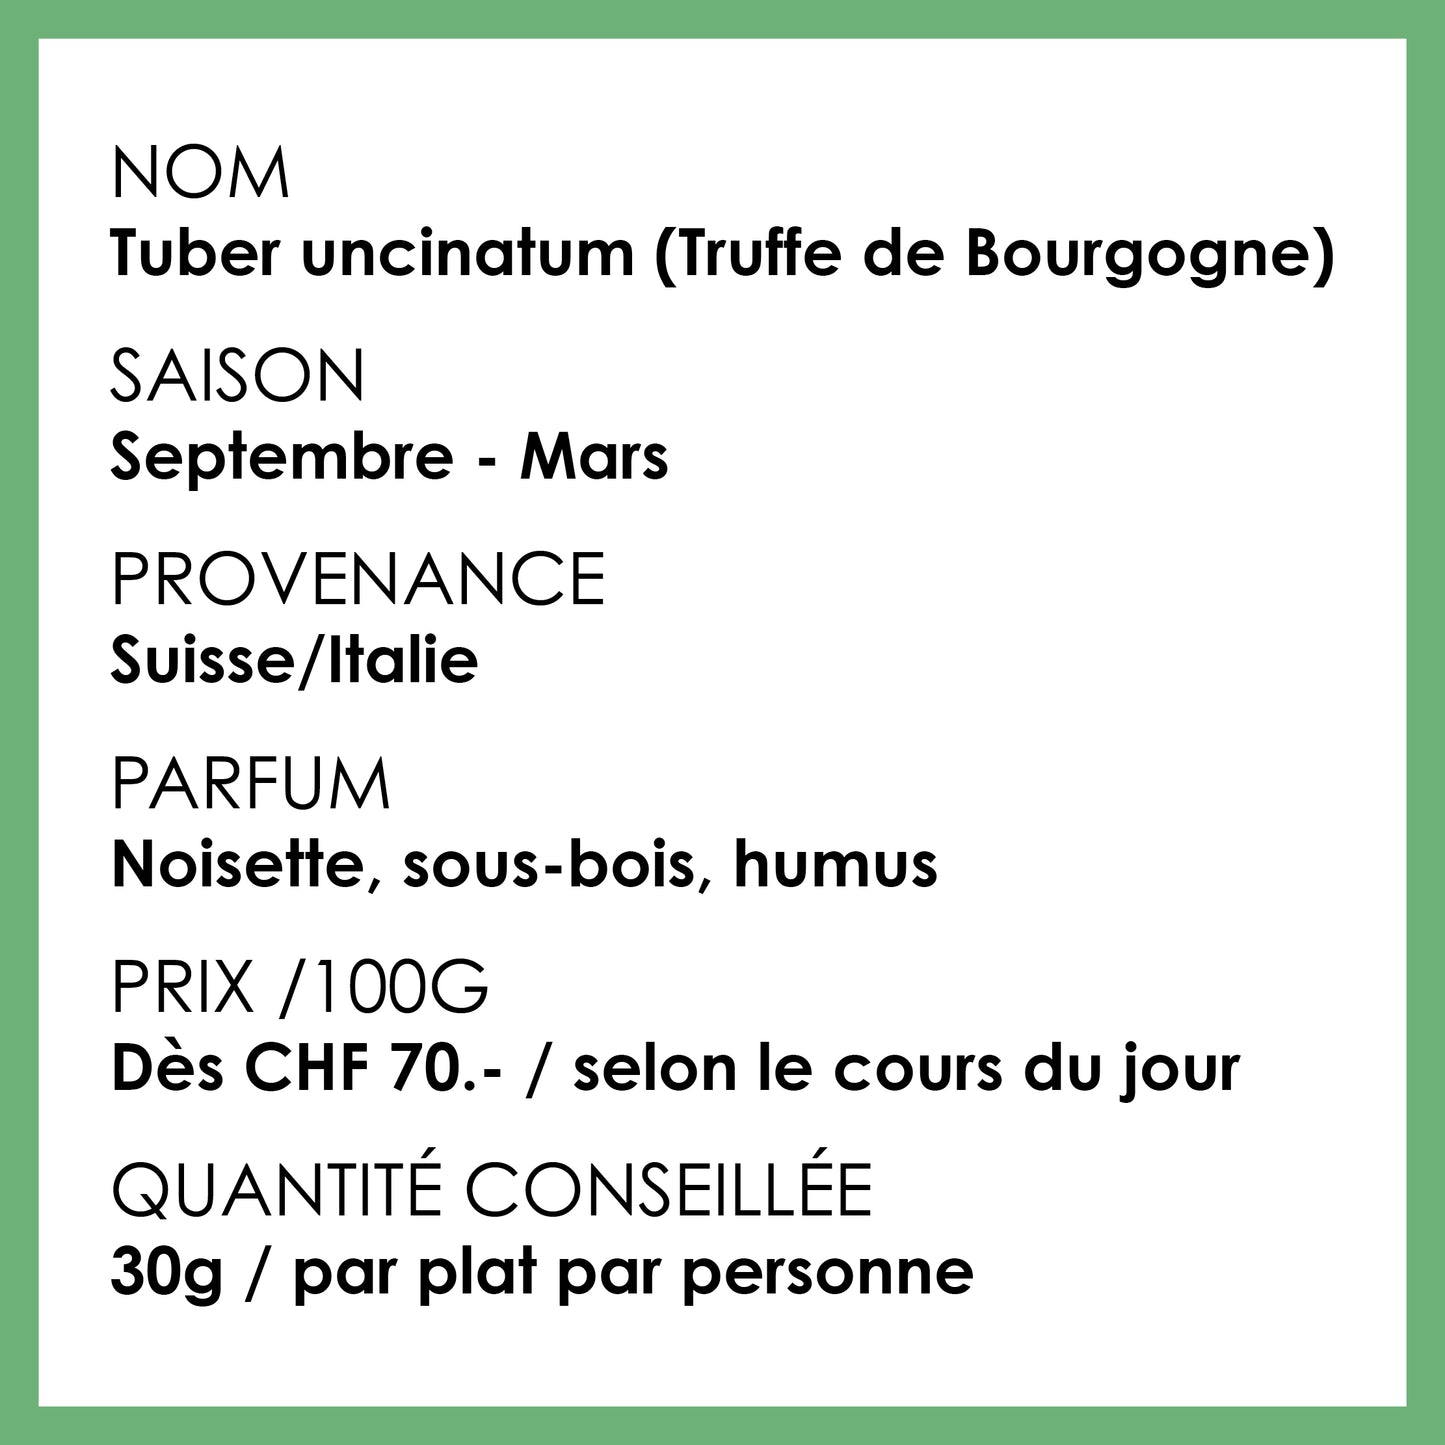 Truffes fraîches, Tuber Uncinatum dîtes truffe de Bourgogne ou d’automnes